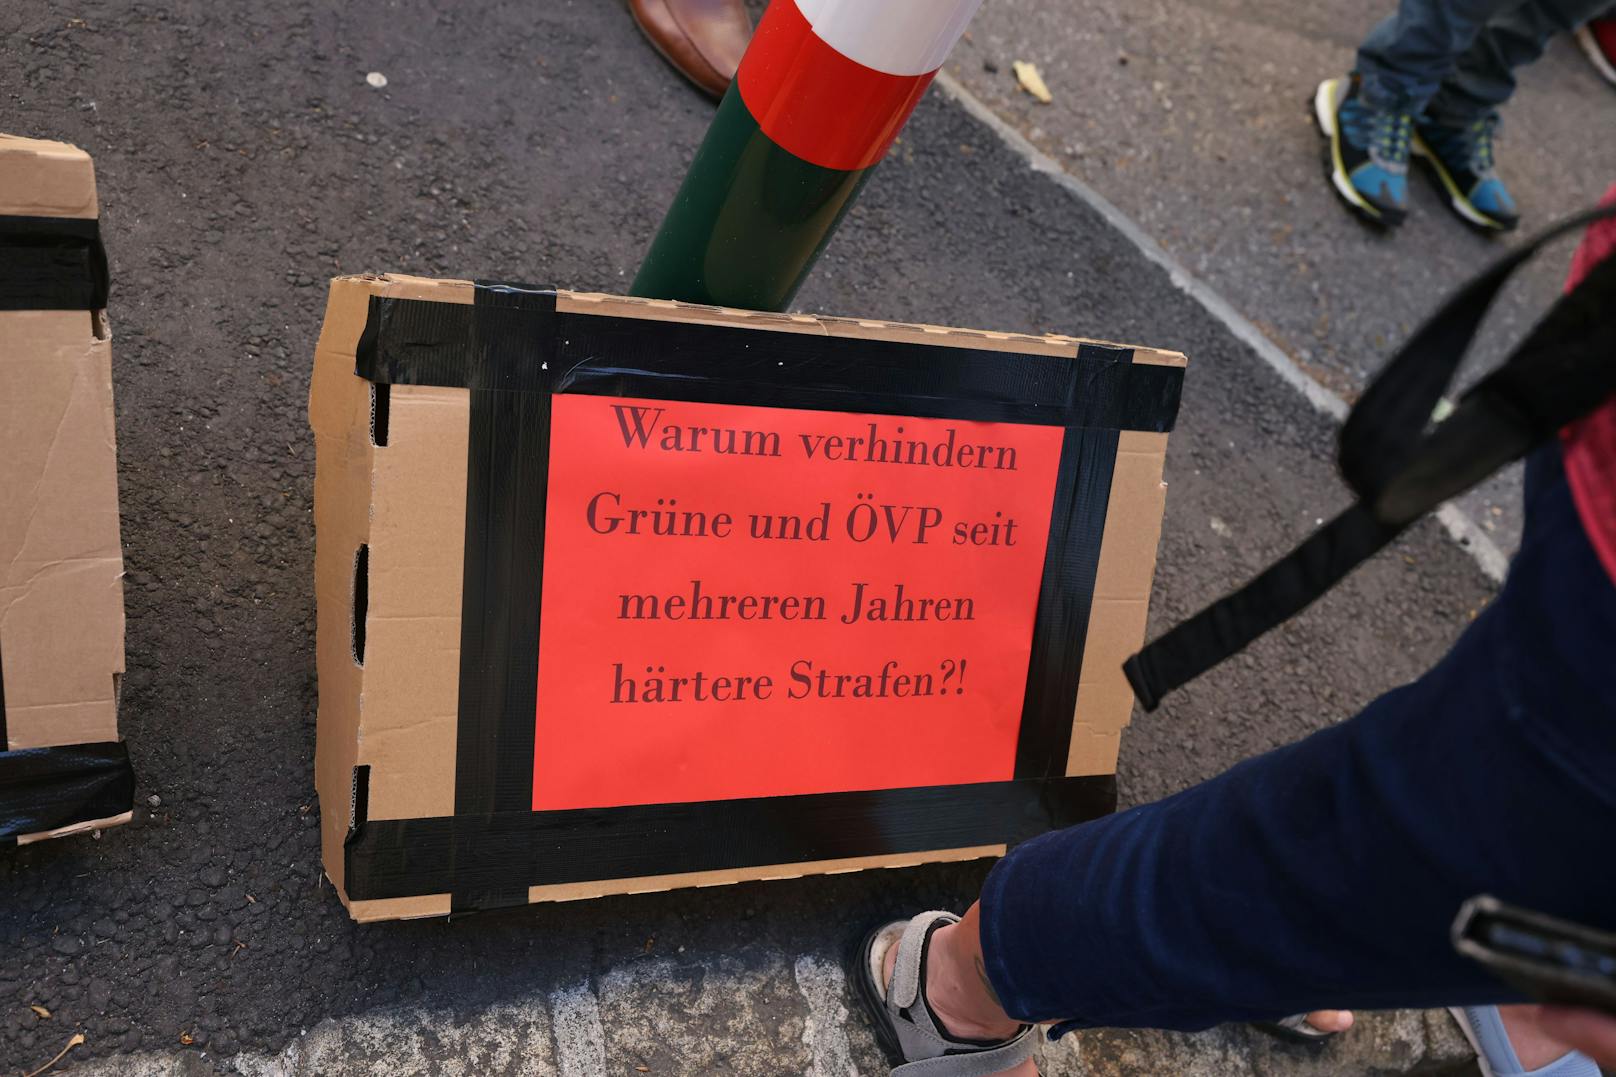 <a data-li-document-ref="100289939" href="https://www.heute.at/s/florian-teichtmeister-prozess-wien-kinder-pornografie-100289939">Florian Teichtmeister</a> wird am Dienstag in Wien der Prozess gemacht. Vor dem Landesgericht haben sich bereits zahlreiche Demonstranten versammelt.